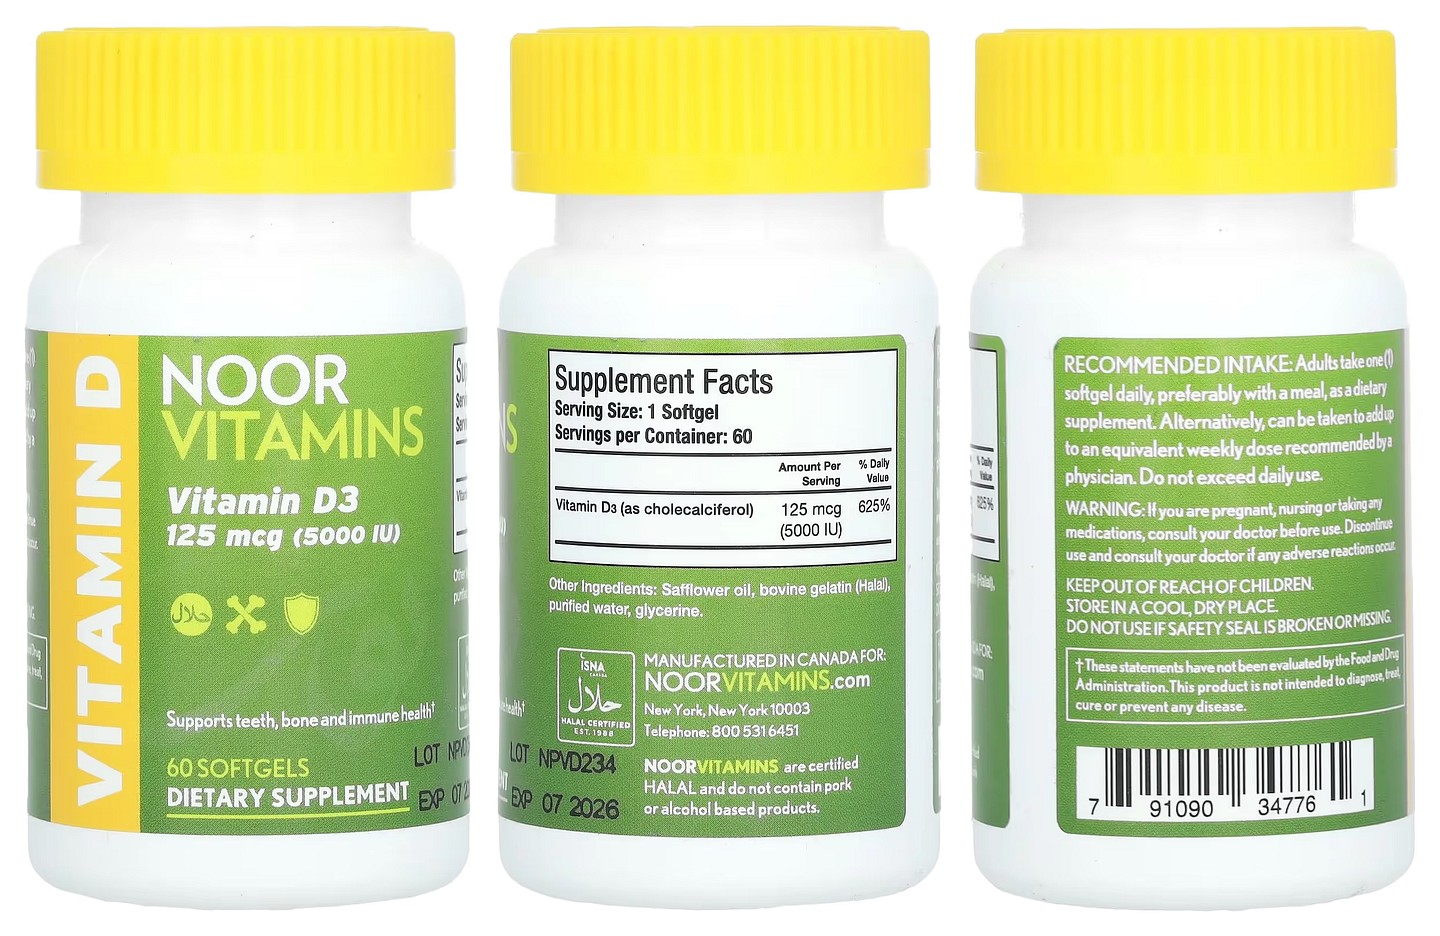 Noor Vitamins, Vitamin D3 packaging